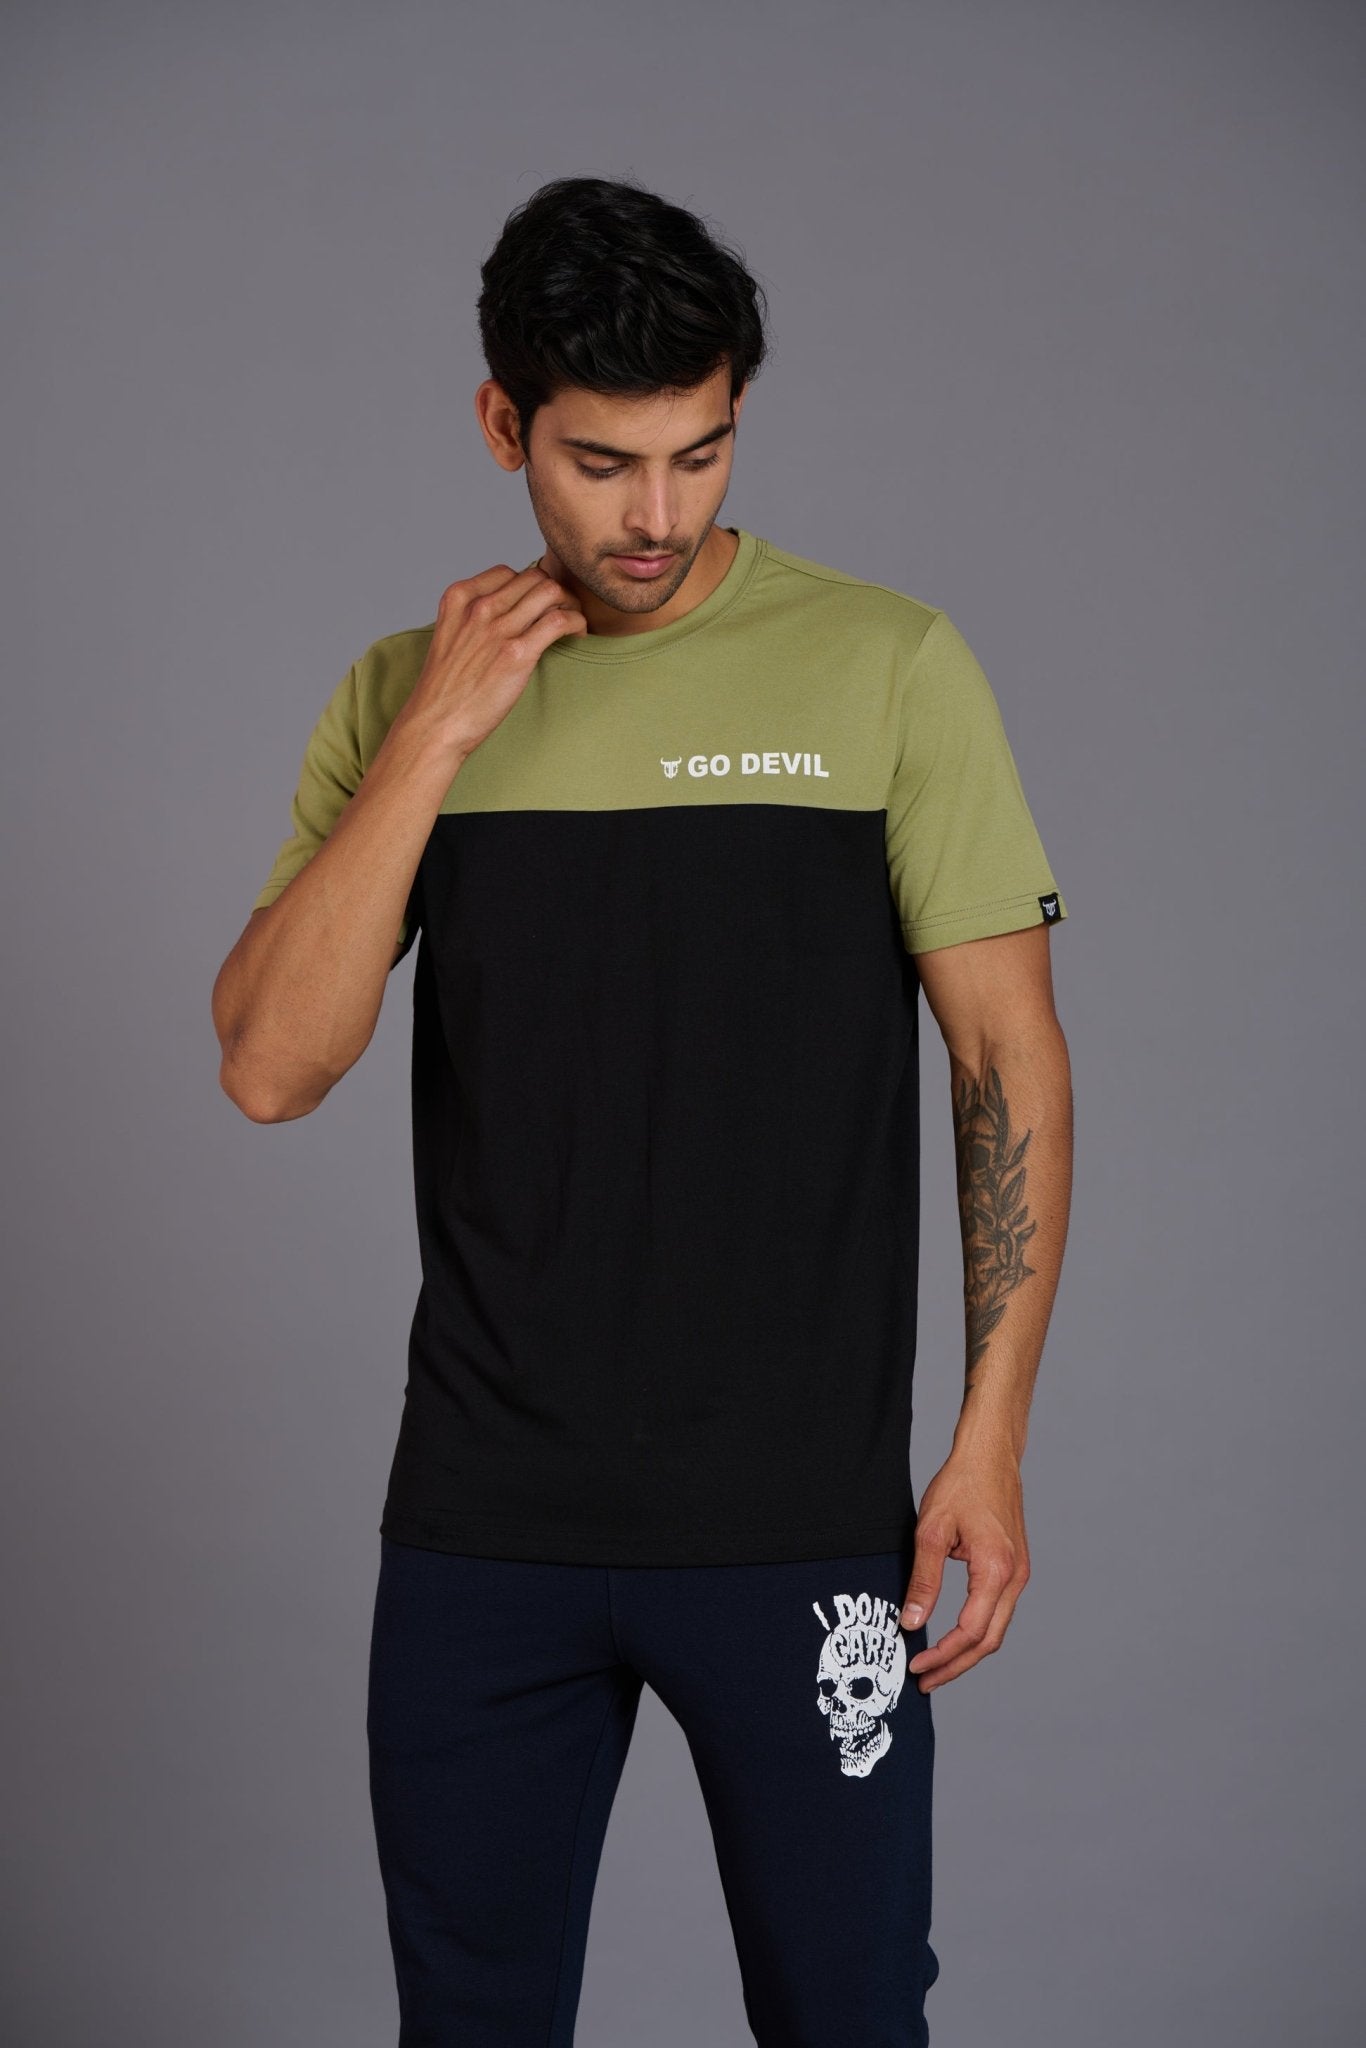 Go Devil Printed Green & Black T-Shirt for Men - Go Devil